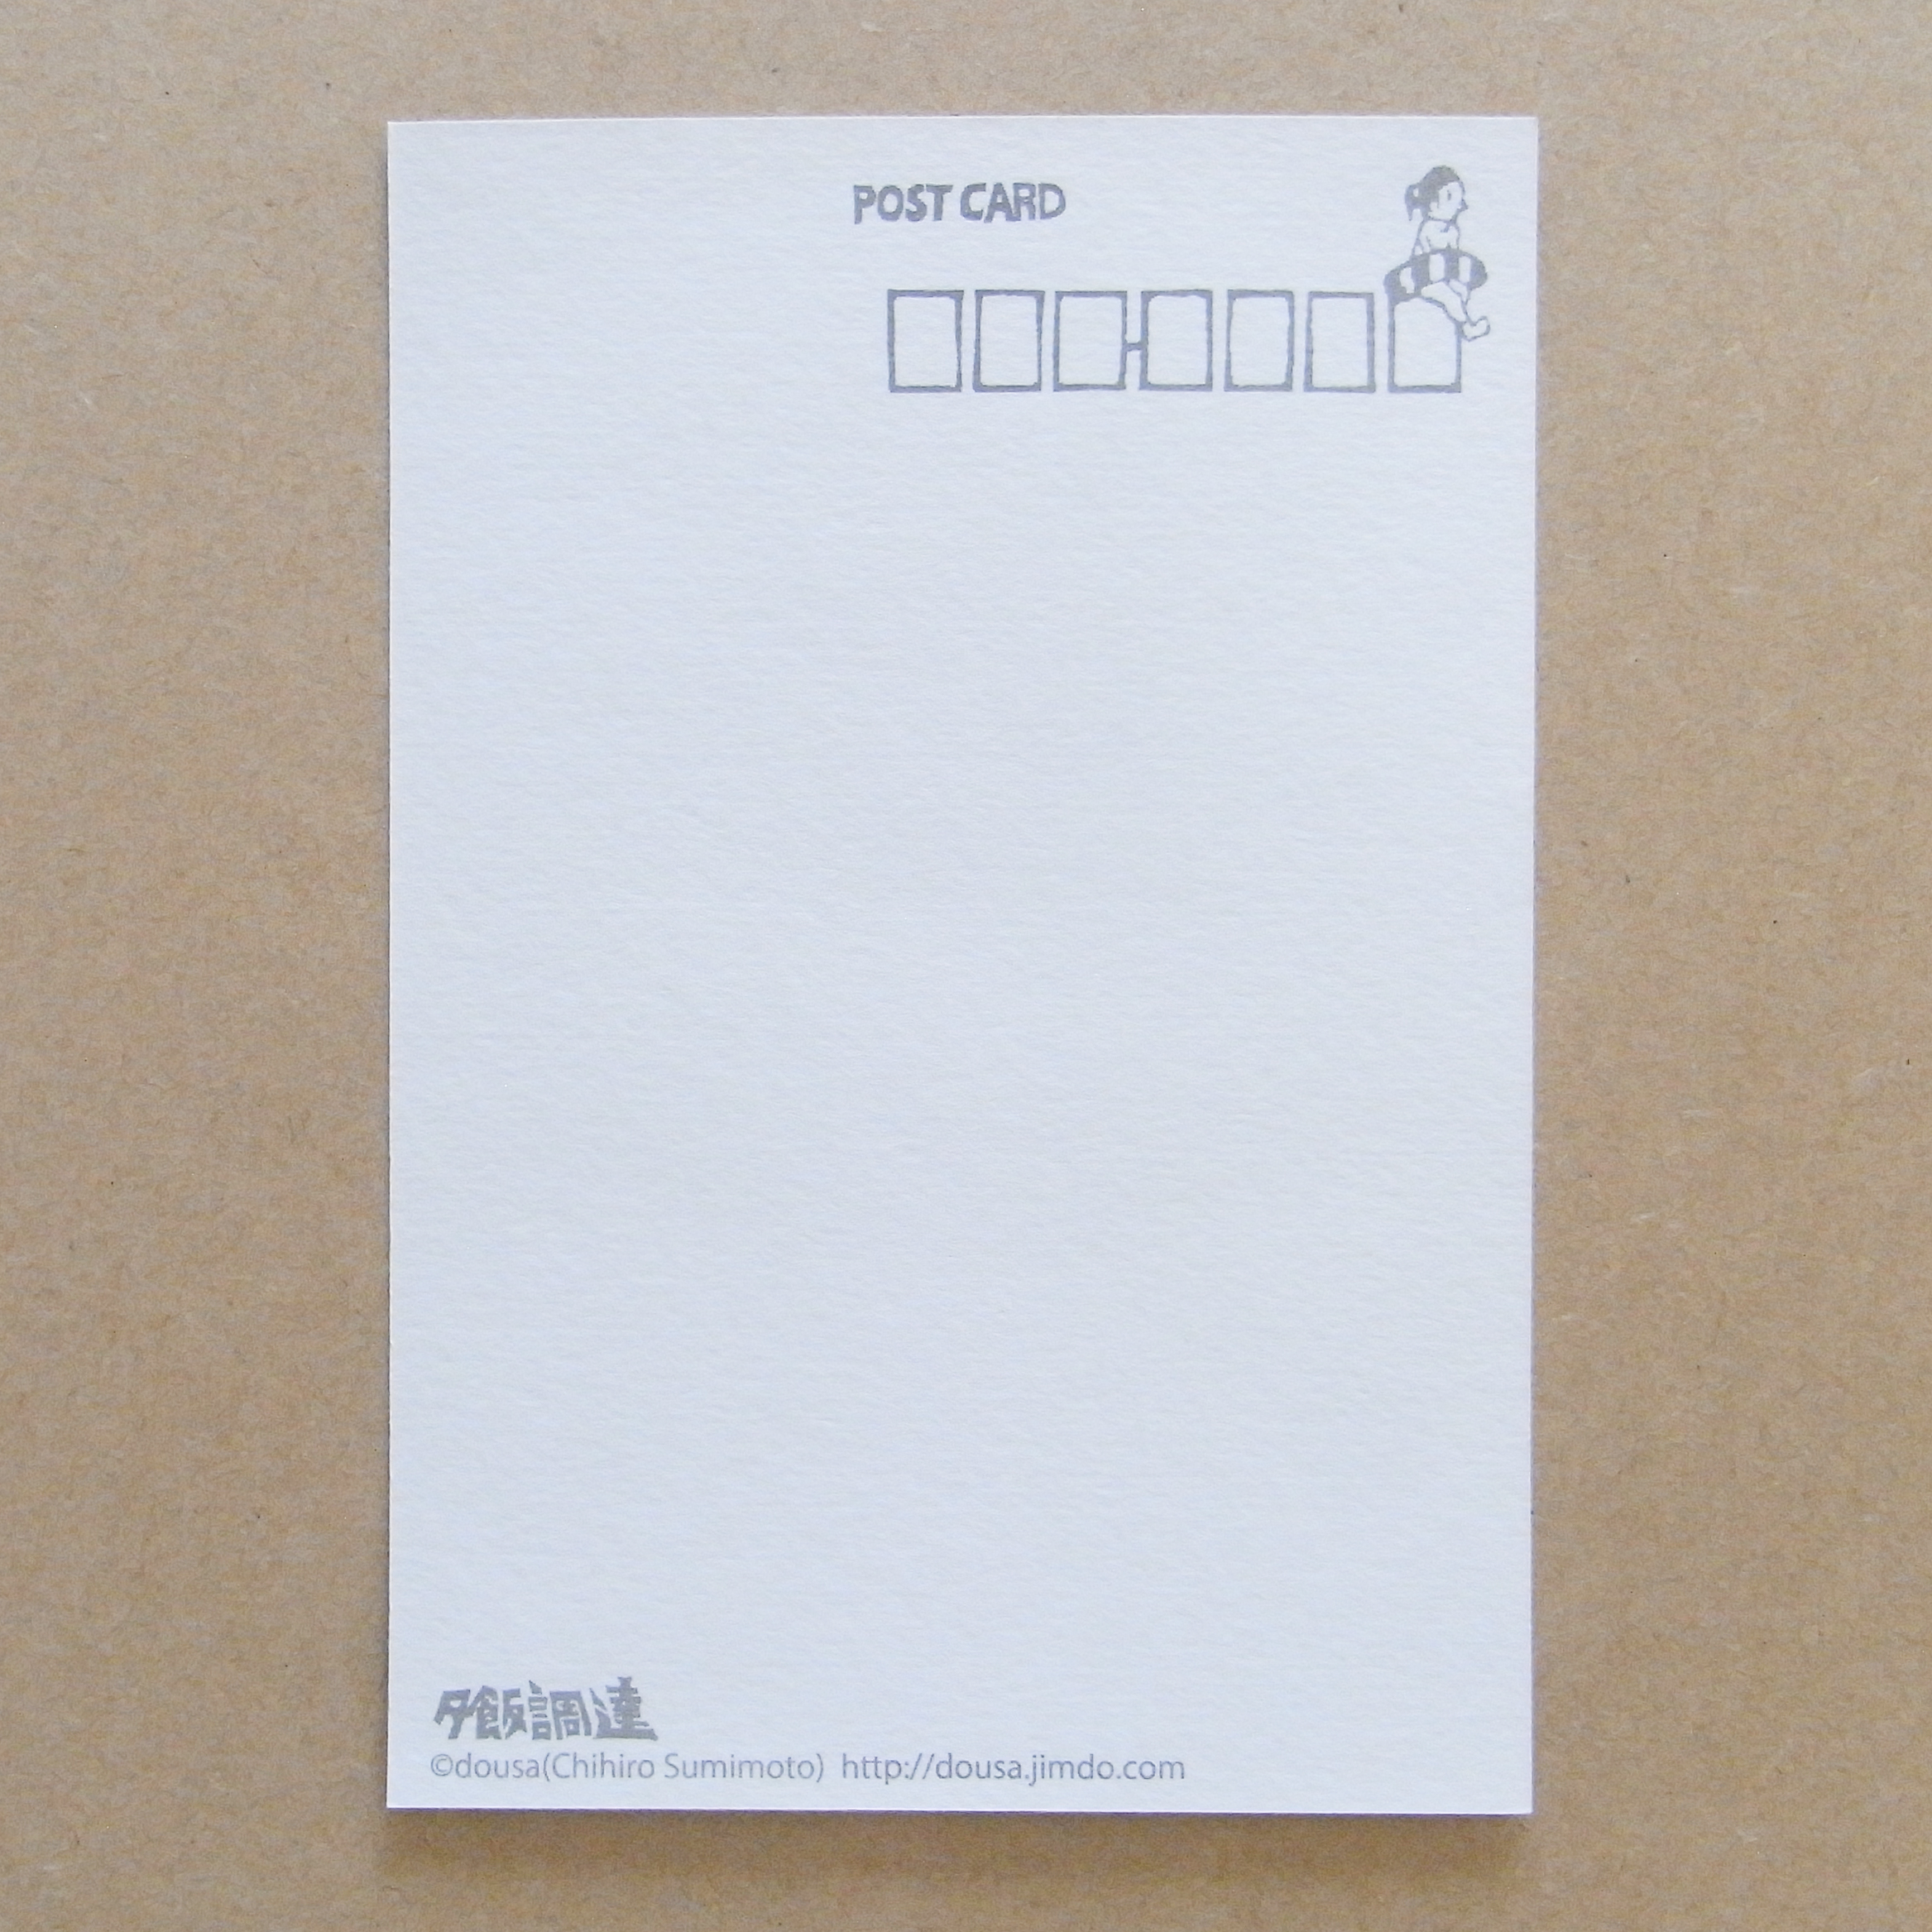 夏のごあいさつポストカード4枚組 Iichi ハンドメイド クラフト作品 手仕事品の通販